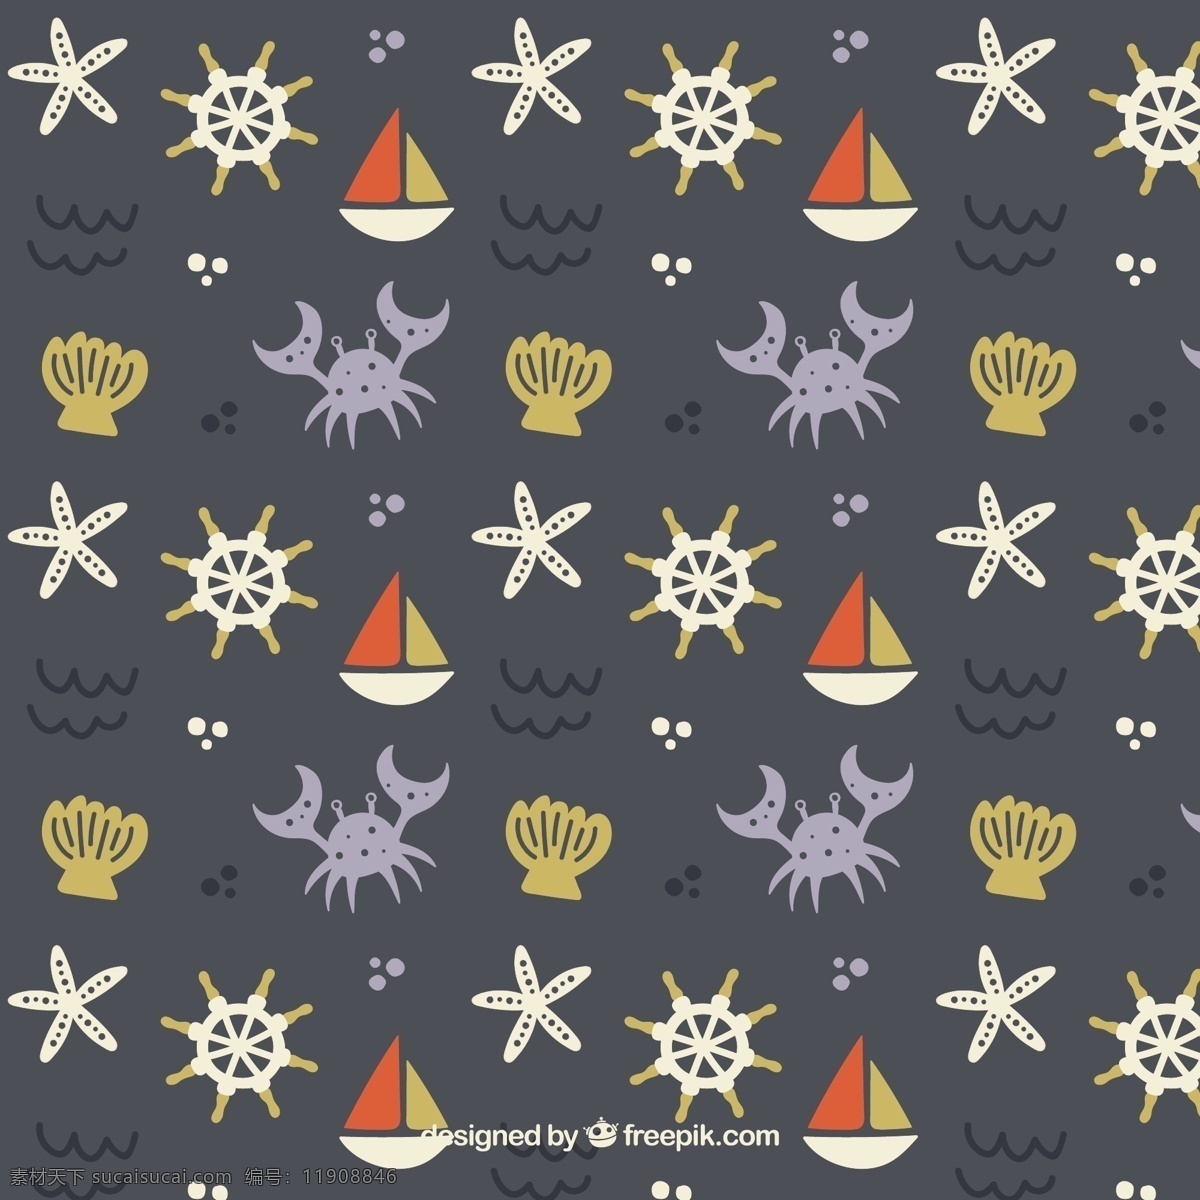 可爱 帆船 图案 螃蟹 背景 模式 夏季 海洋 船舶 船 帽子 海里 元素 贝壳 无缝图案 章鱼 水手 无缝 海军